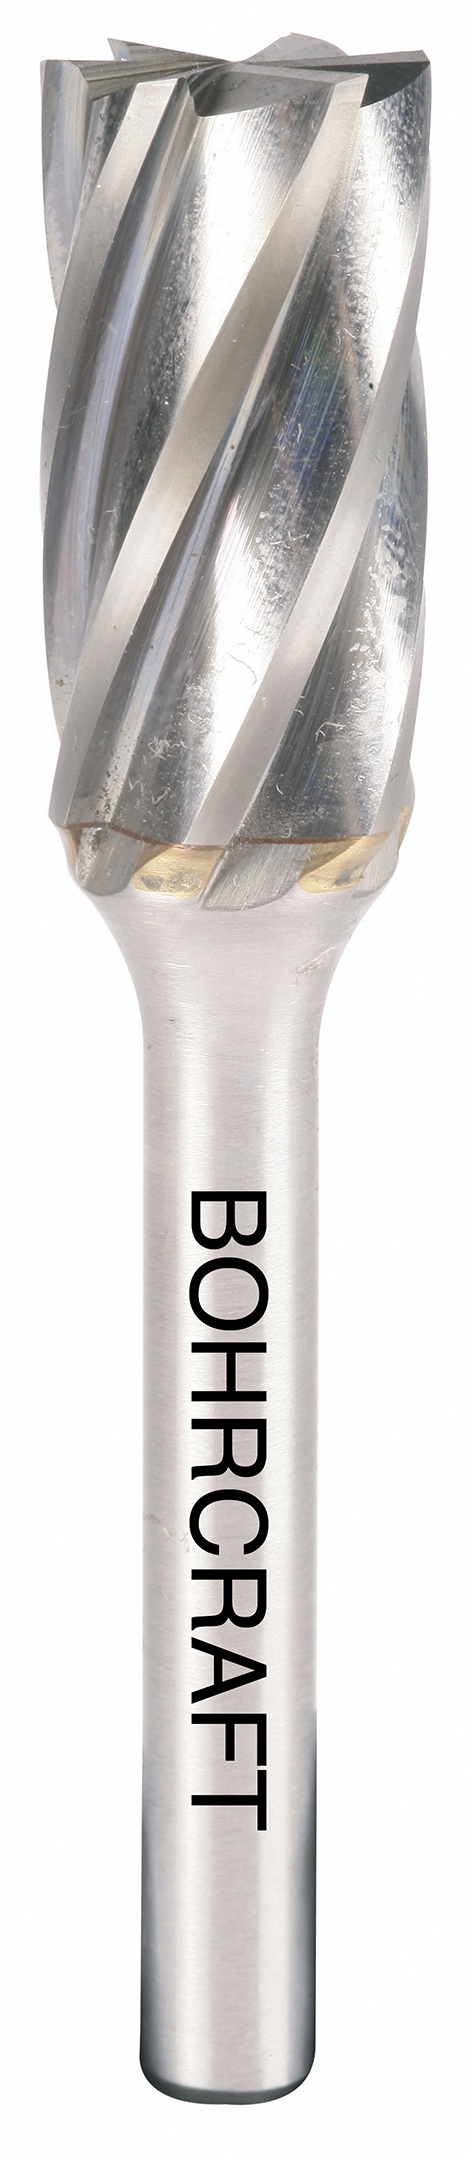 HM-Frässtift Form B Zylinder, Stirnverz. P-Plus12,0 mm / Aluzverzahnung in BC Verp.